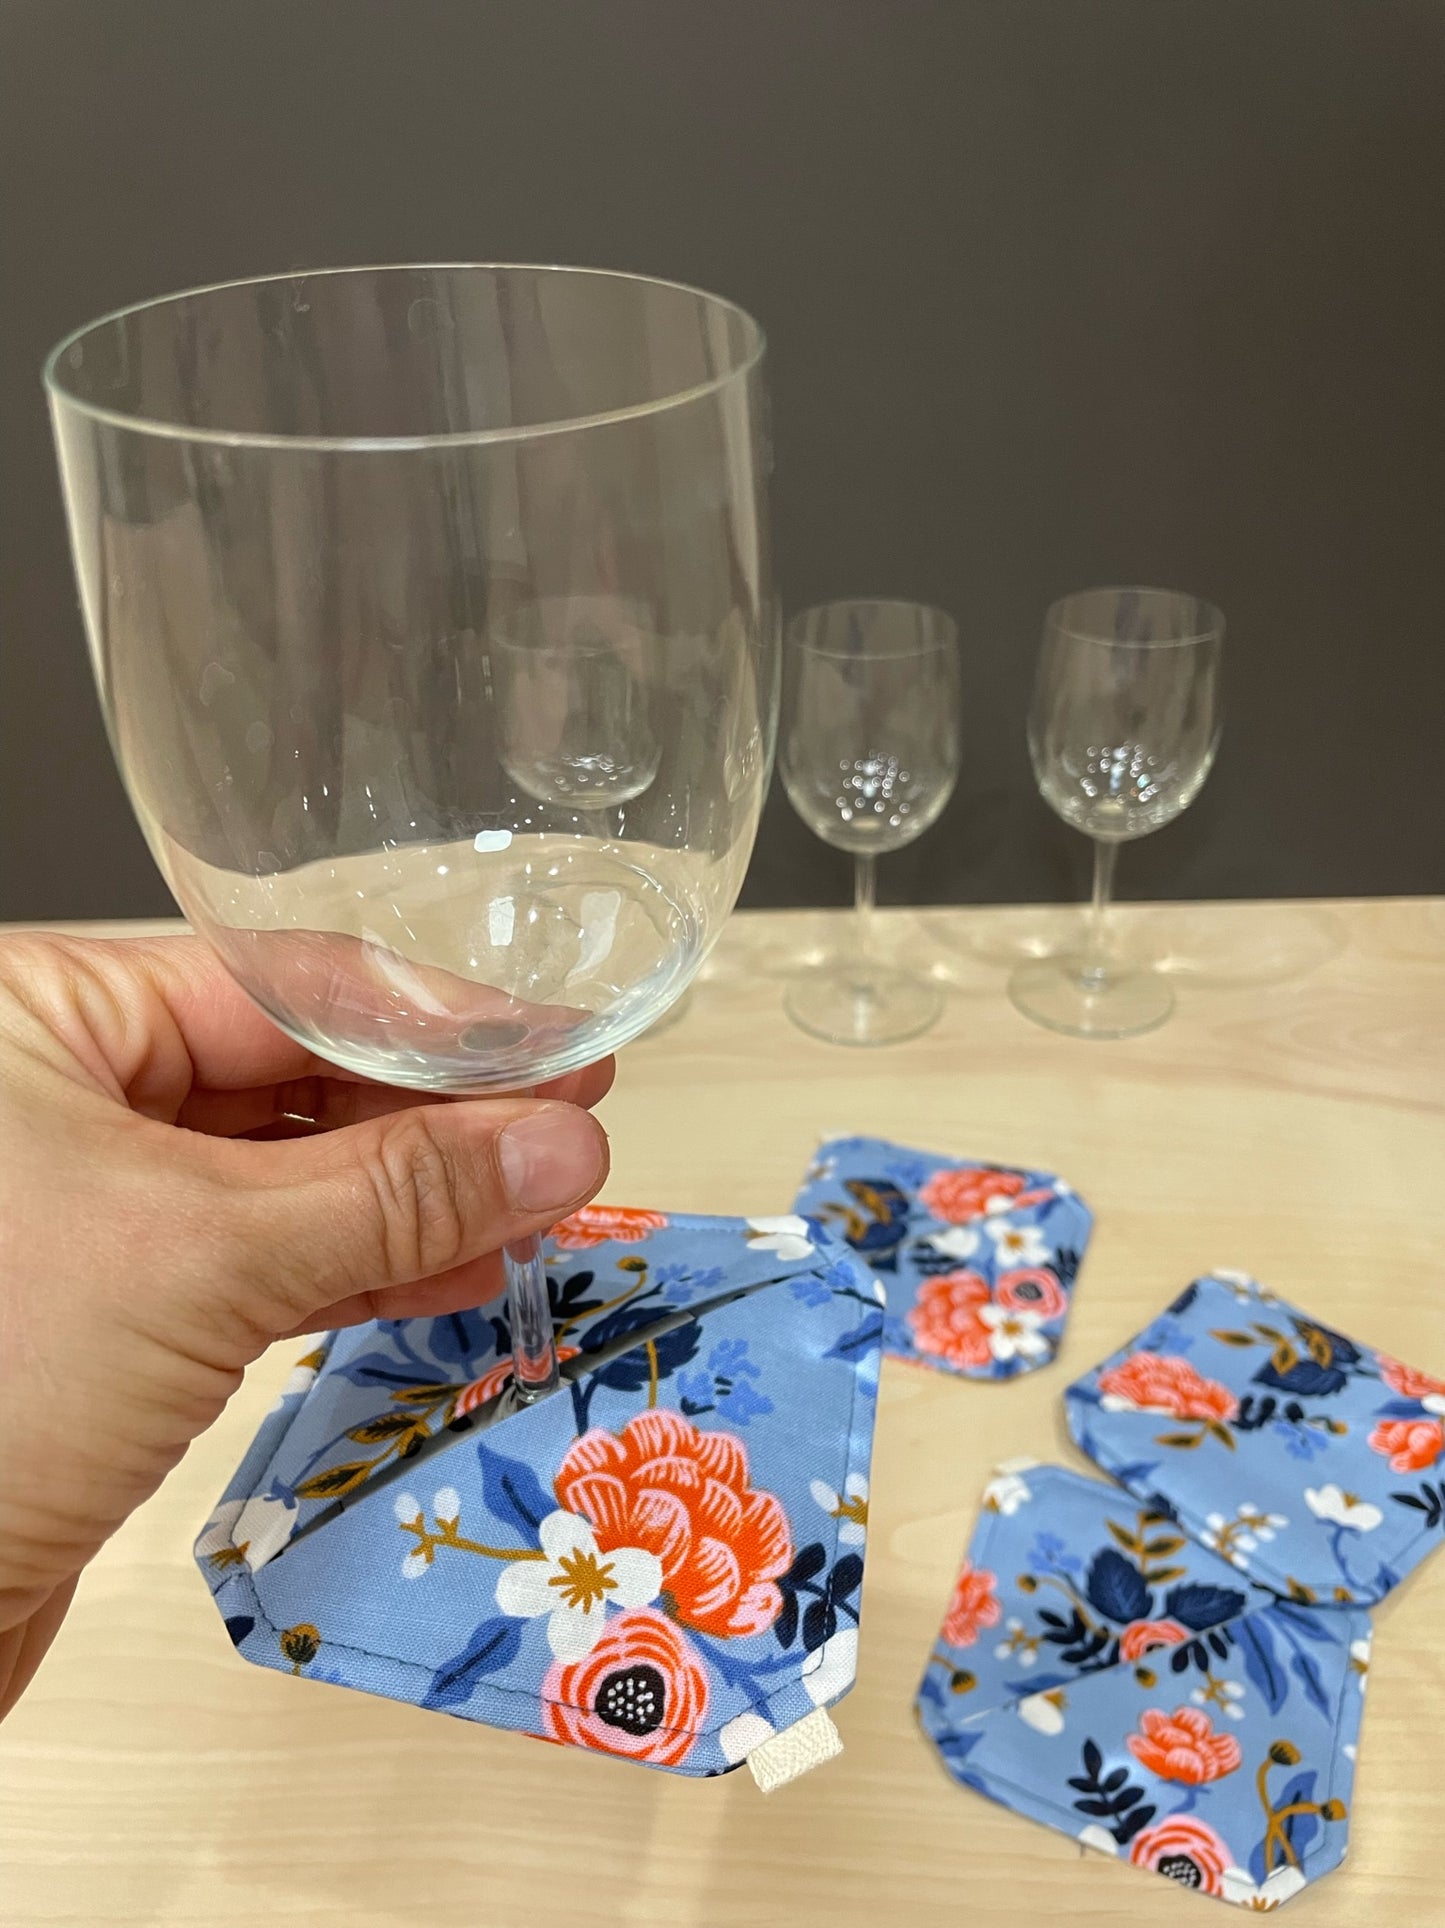 wine coasters (Les Fleur periwinkle floral)